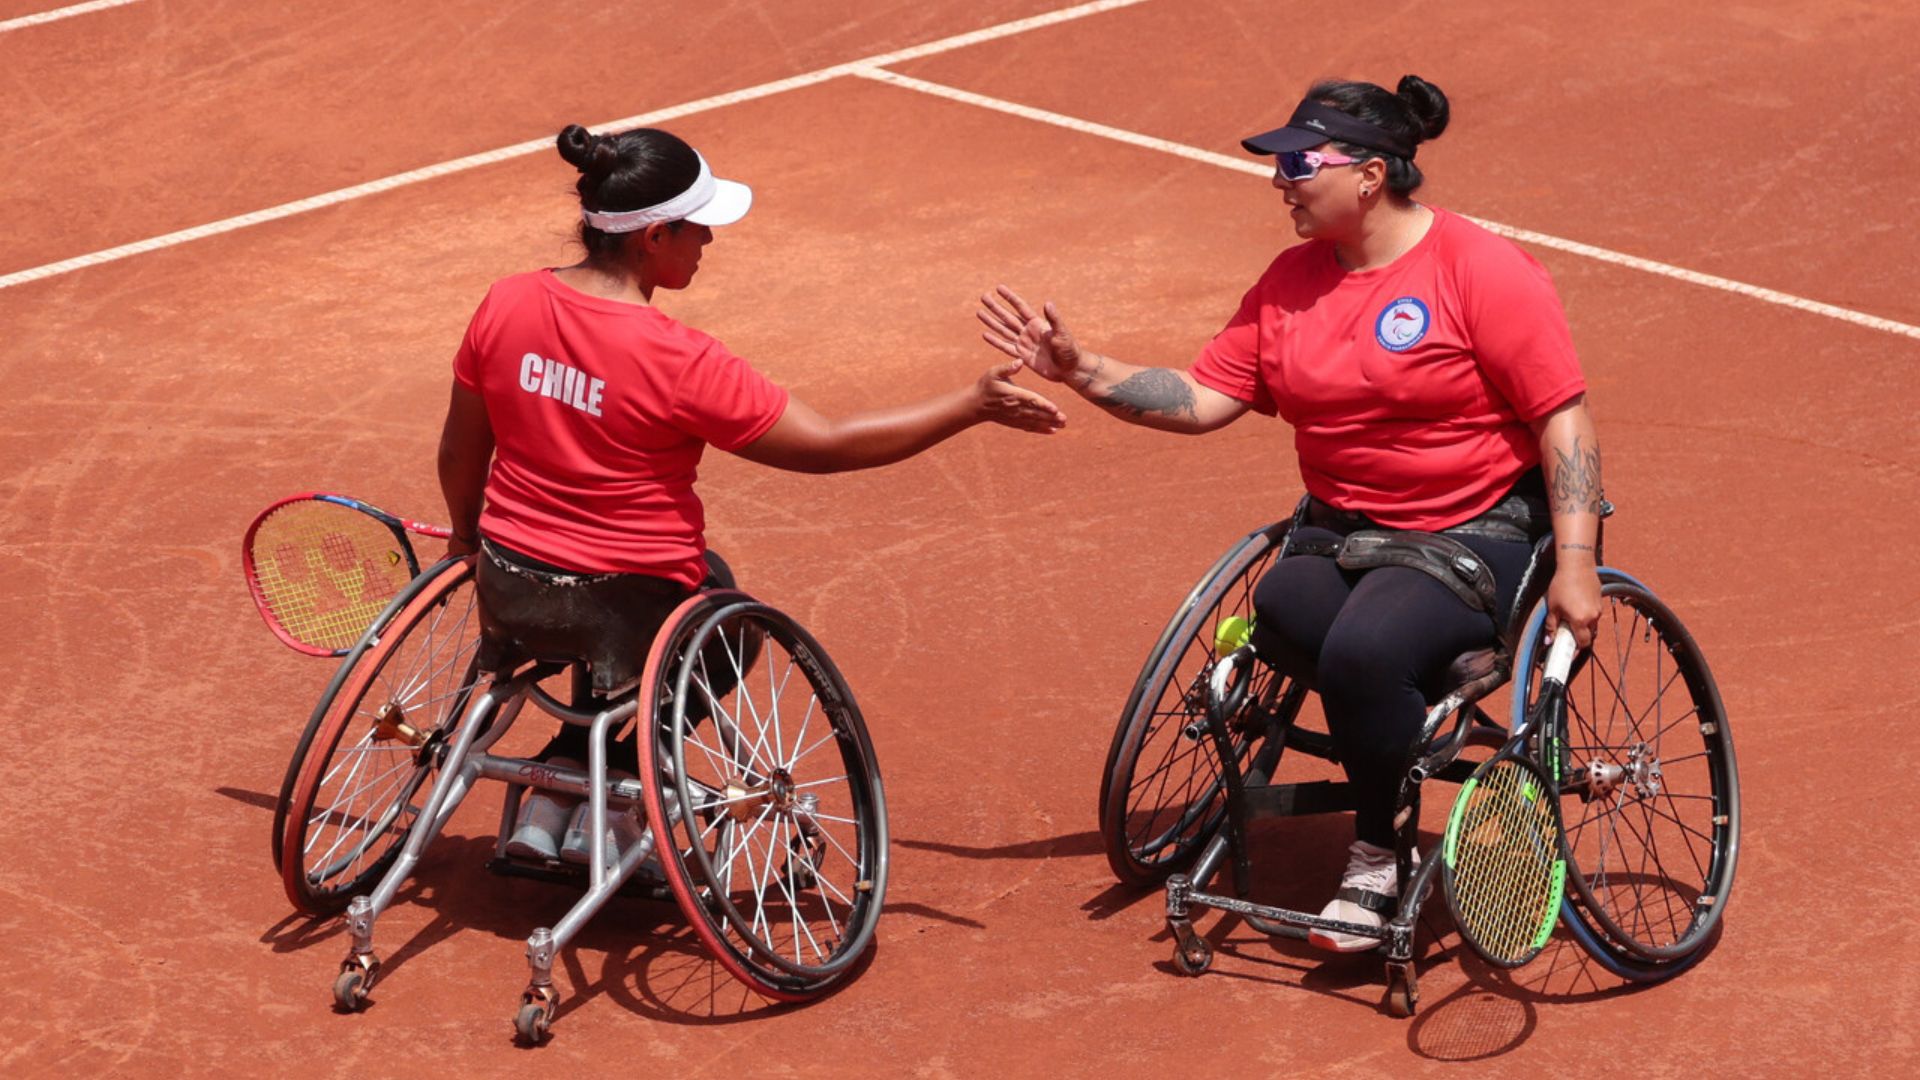 Tenis en silla de ruedas: dupla chilena avanza a semifinales